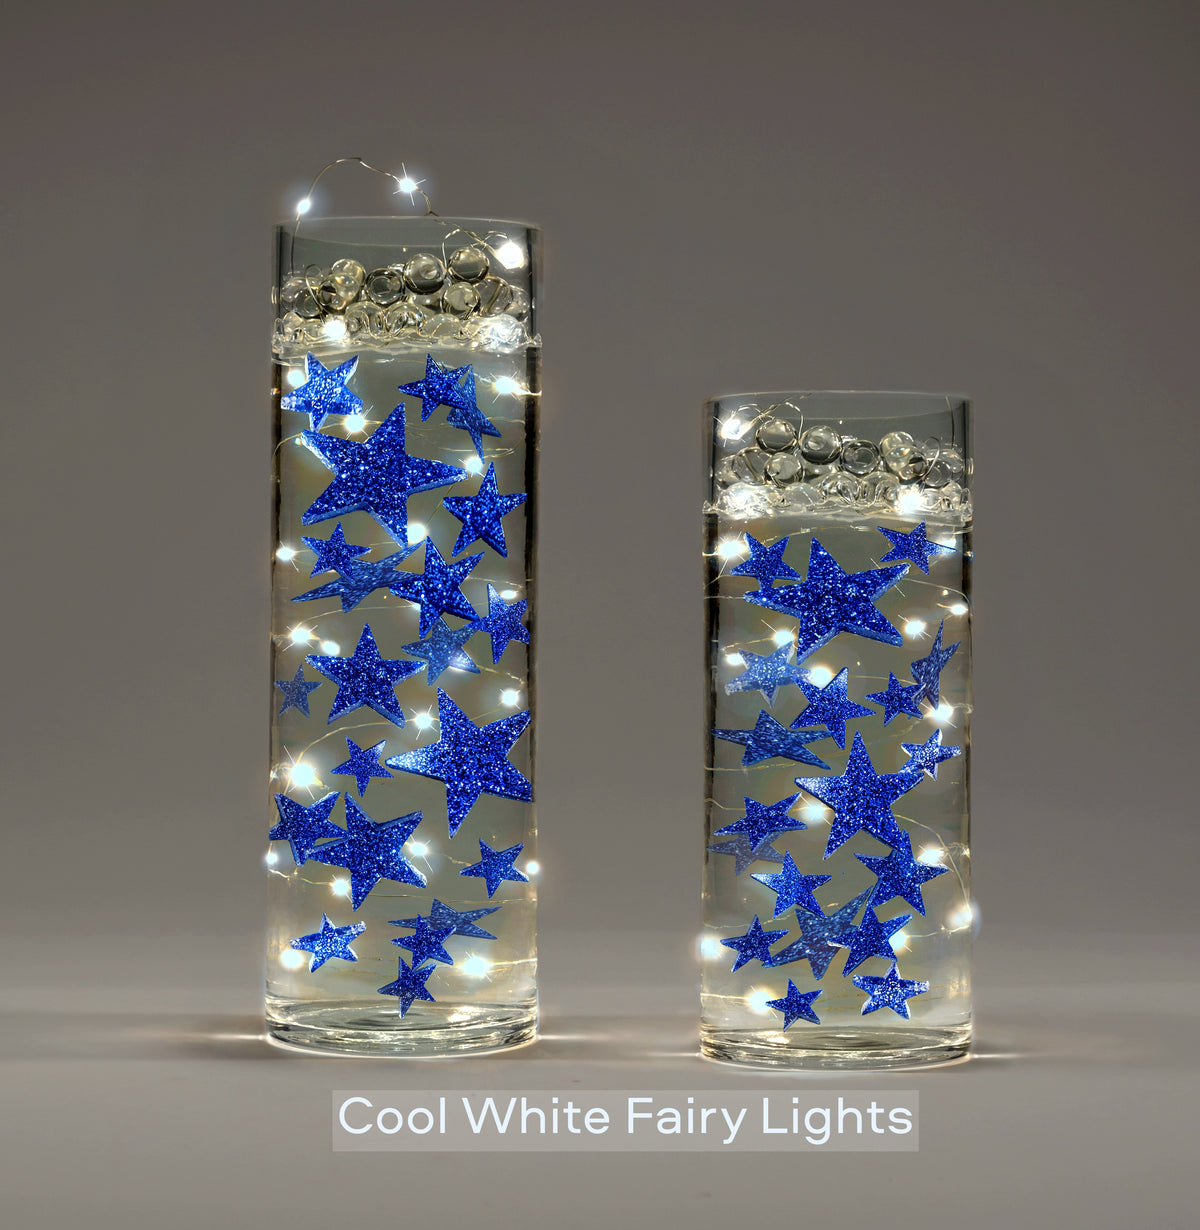 Floating Stars Glitter Blue-Rellena galones para tus jarrones-Incluye kits de geles de agua transparentes para una apariencia flotante-Opción de luces de hadas sumergibles-Impresionantes decoraciones de jarrones